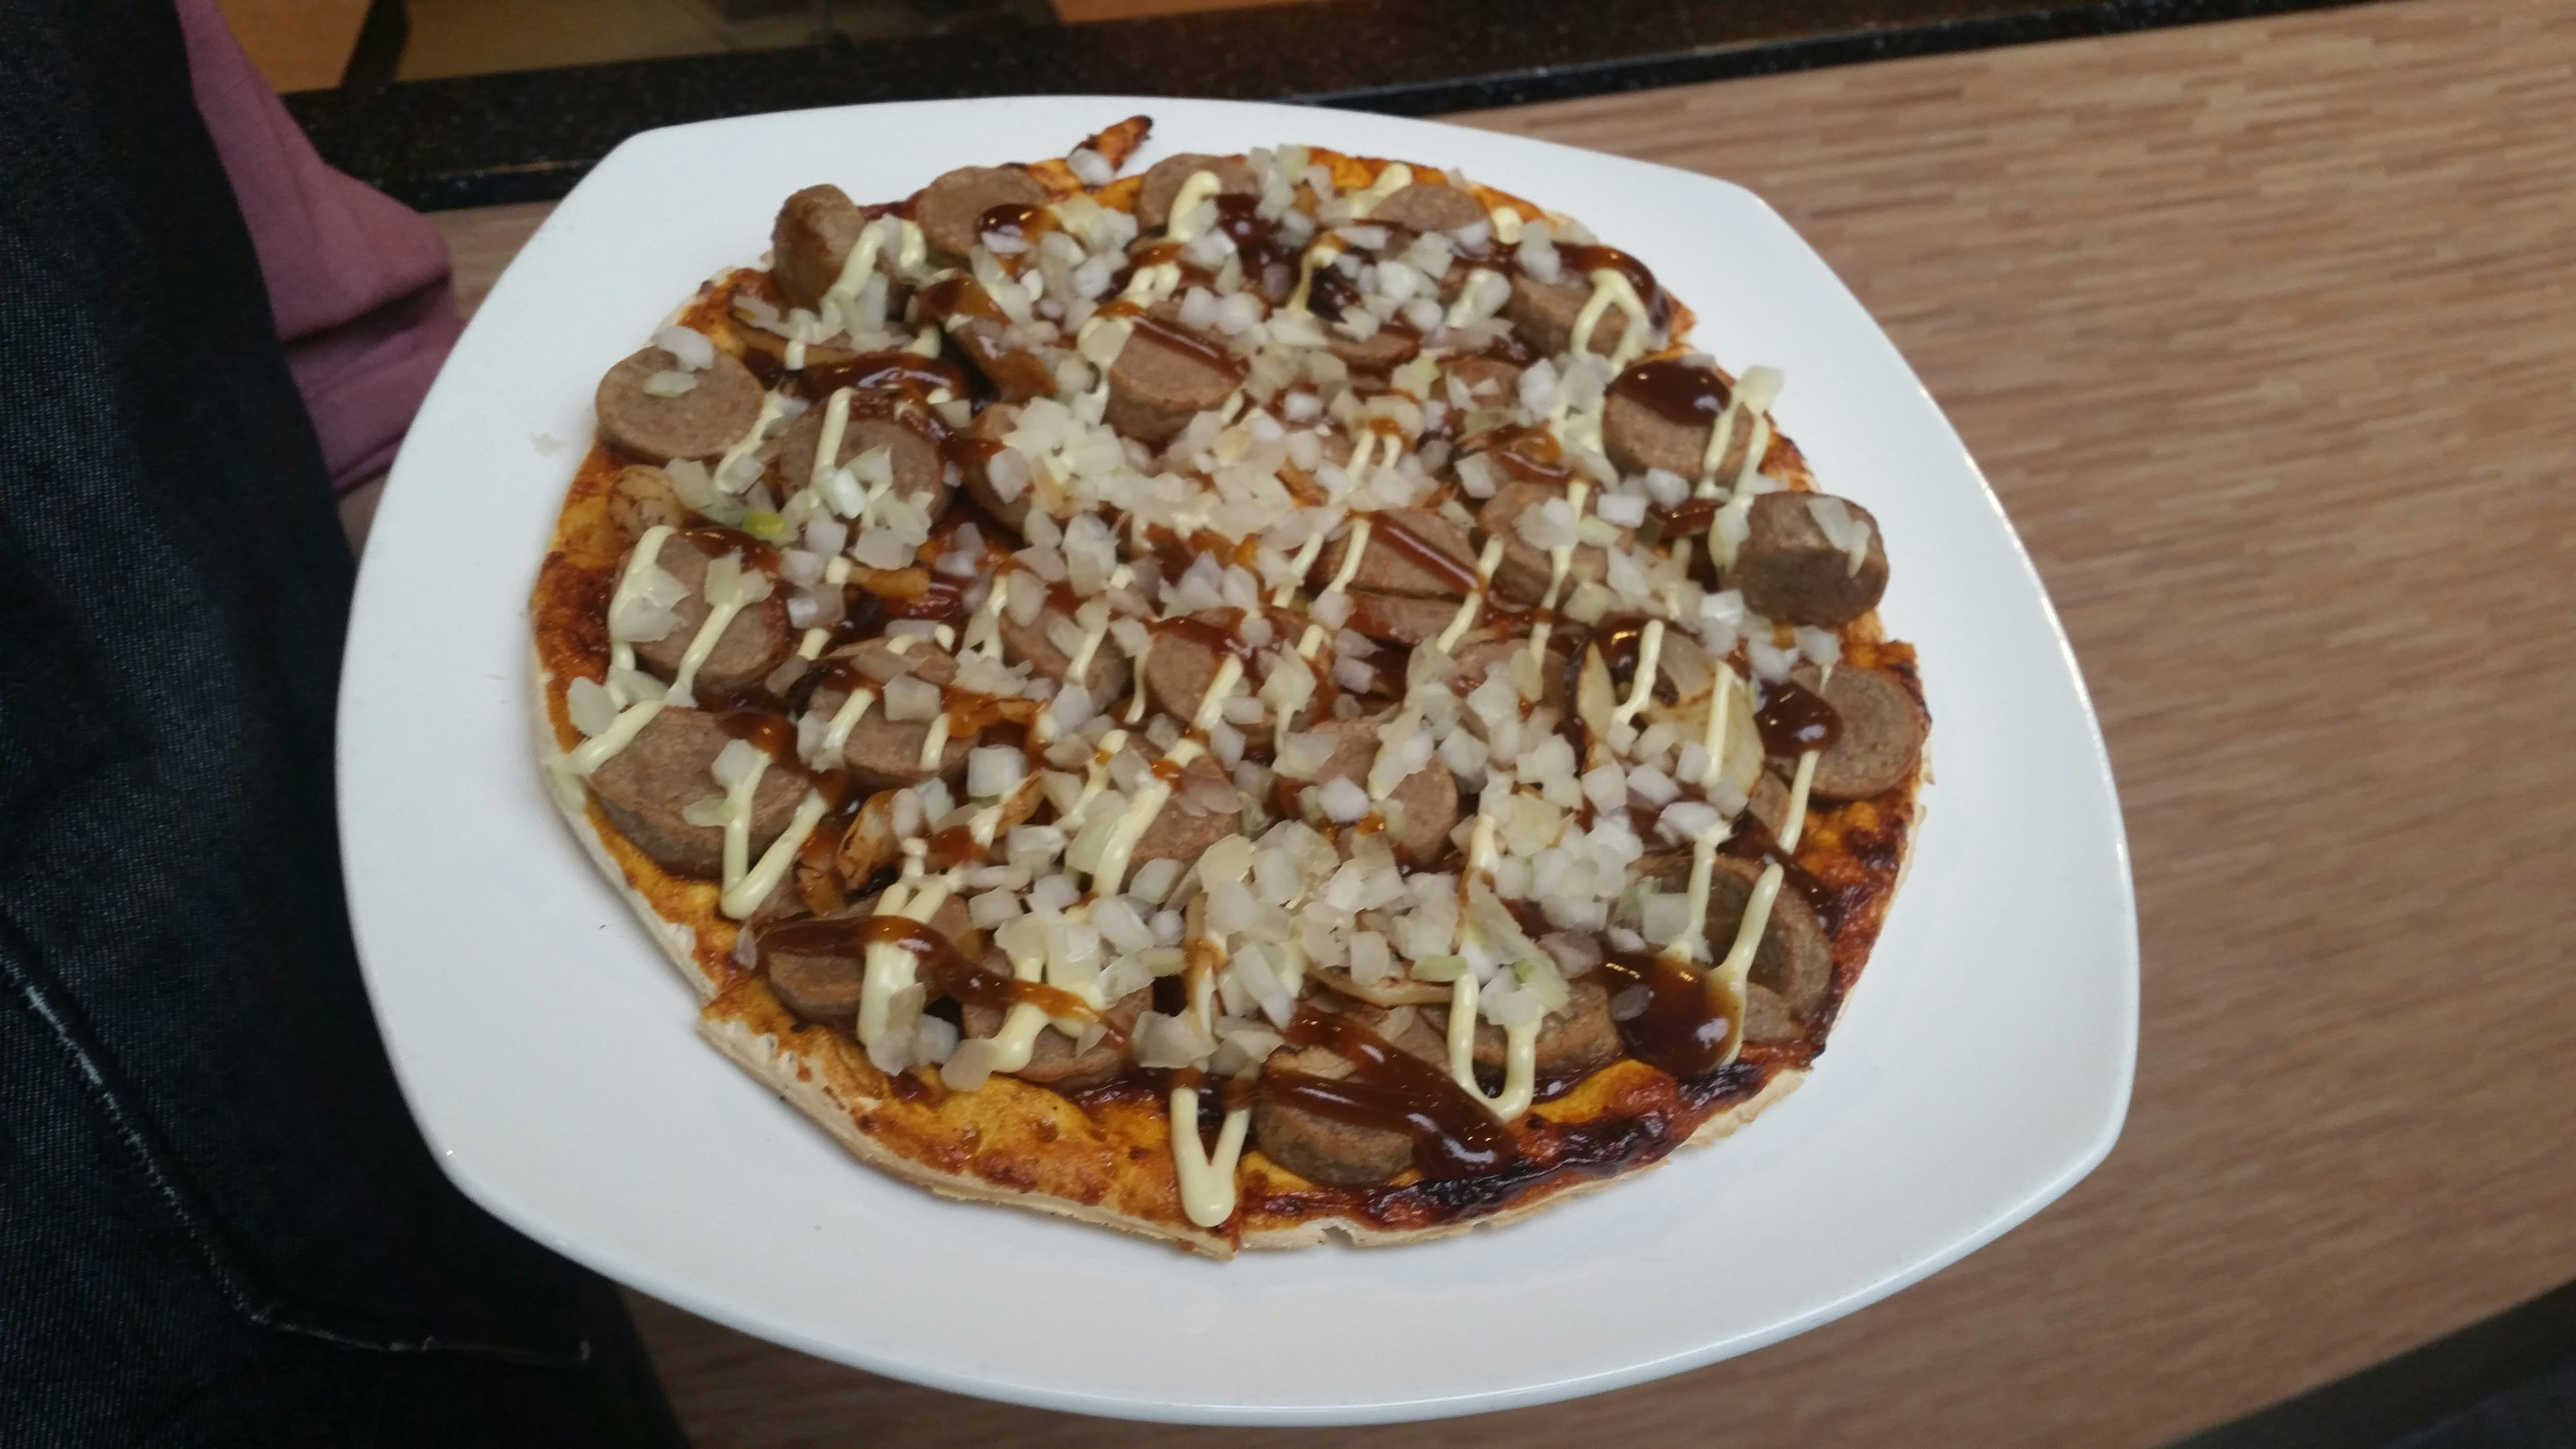 Cafetaria op Urk draait overuren door pizza frikandel speciaal